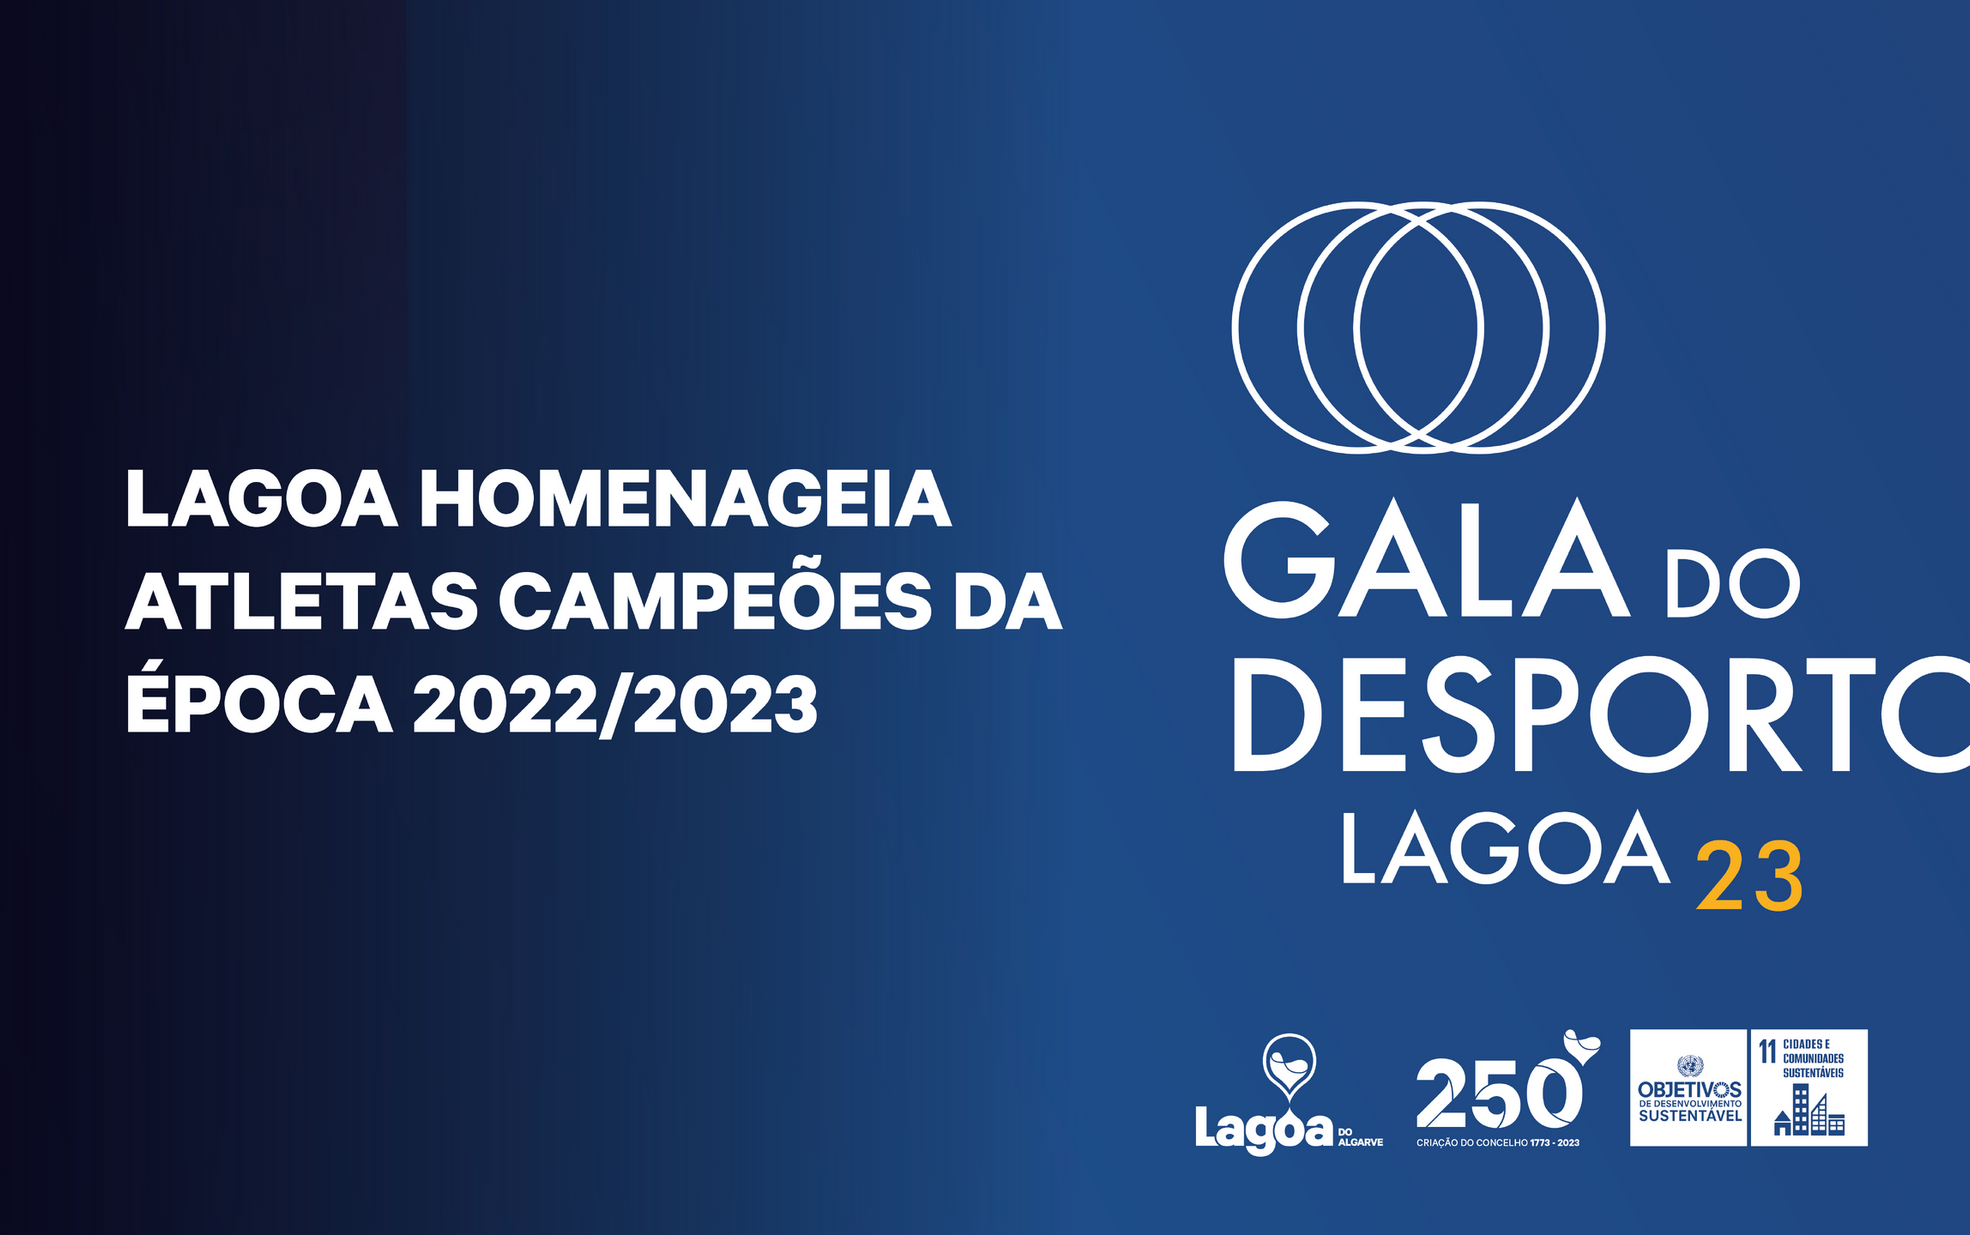 Lagoa homenageia atletas campeões da época 2022/2023